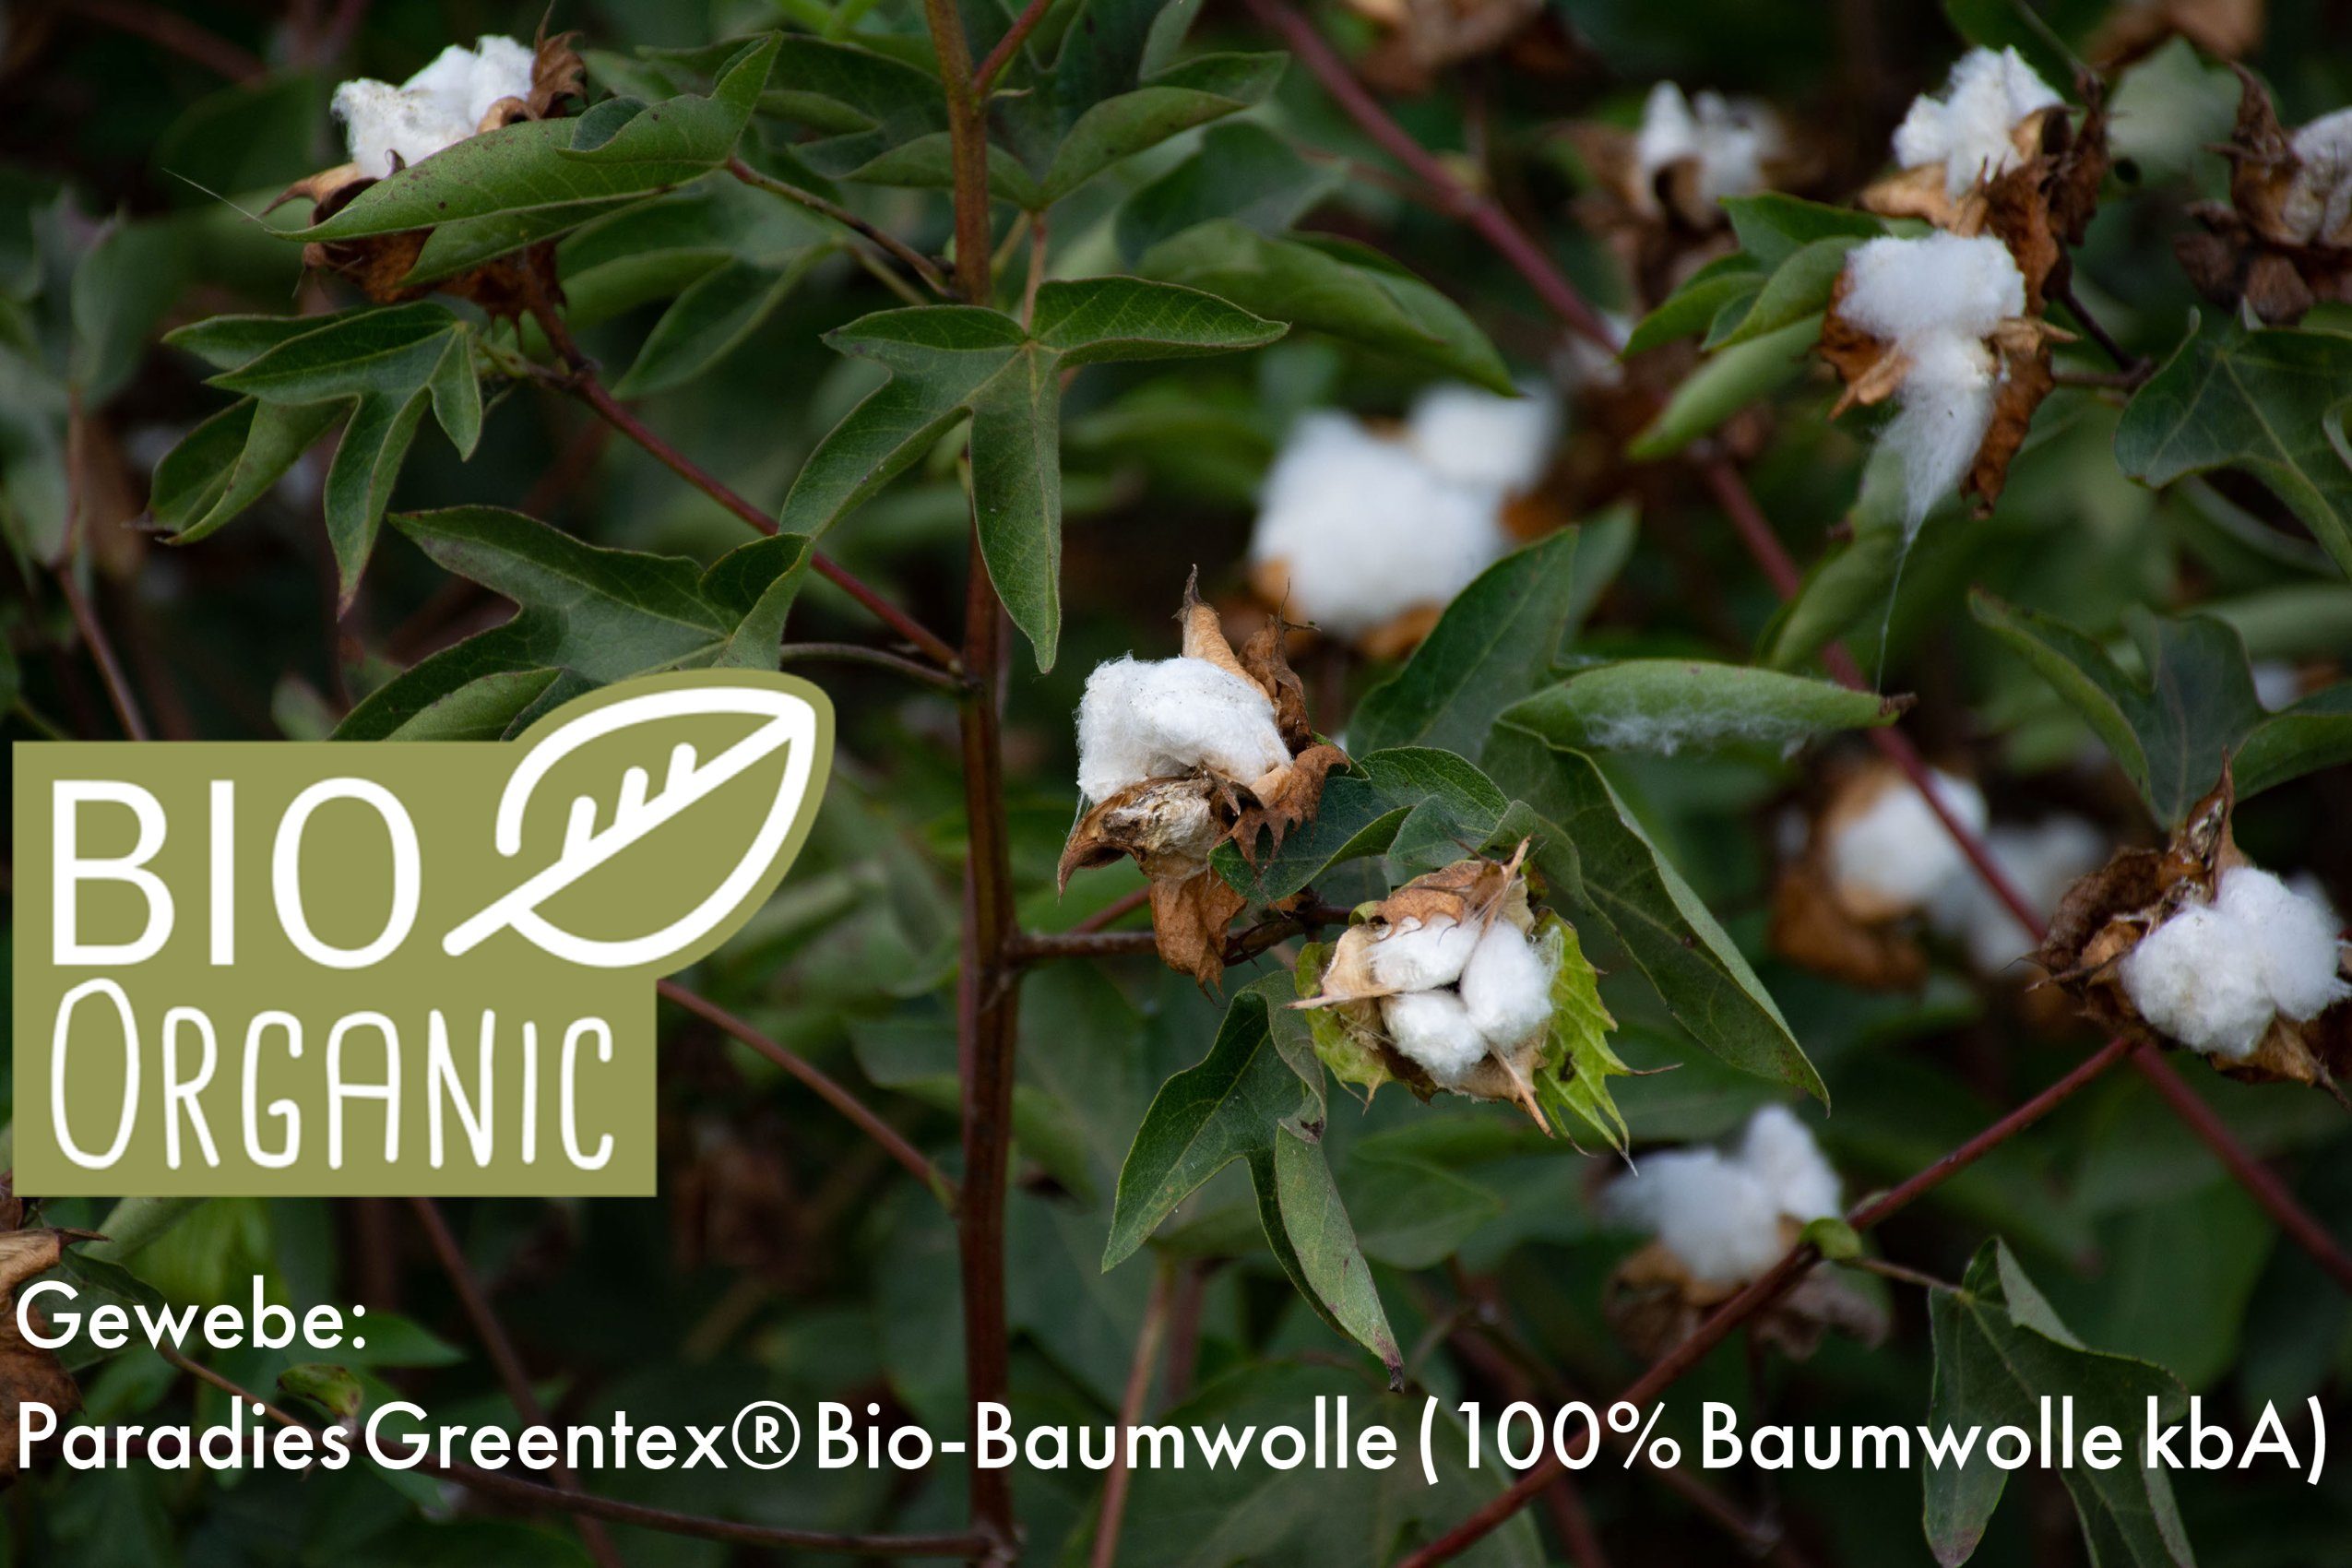 Bio-Baumwolle + Füllung: hohes kuschelig (kbA), Volumen Bezug: Bio, Paradies, Kopfkissen, 100% Kinderbettdecke 100% Polyester, Anela besonders und